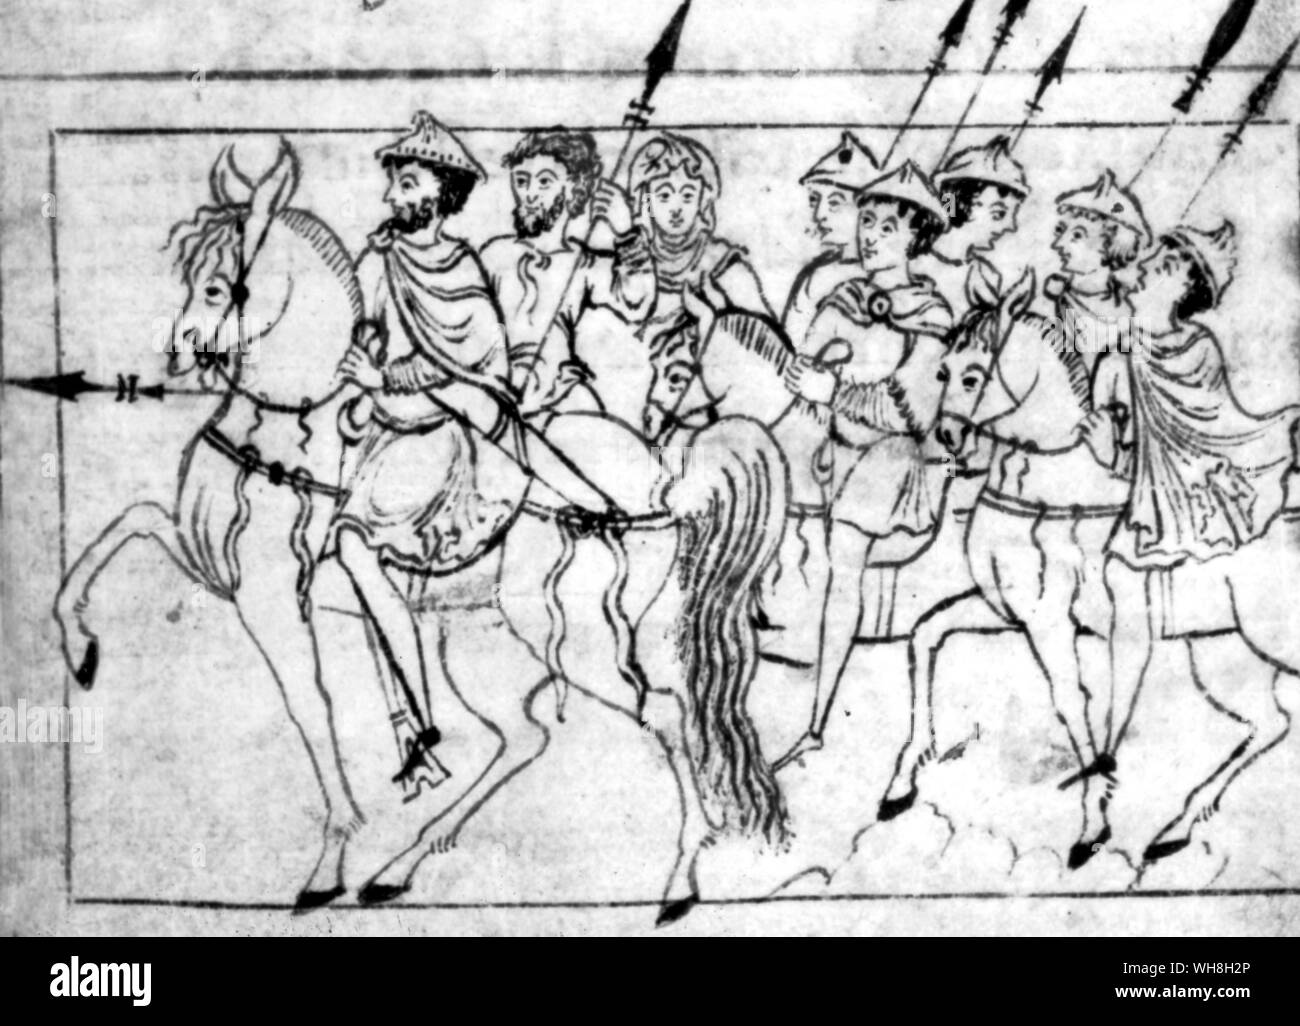 Accessoires d'origine anglo-saxonne manuscrit indique qu'aussi tard que le 11e siècle, d'un des étriers n'étaient pas nécessairement utilisé même par les guerriers. Encyclopédie du cheval à partir de la page 39. Banque D'Images